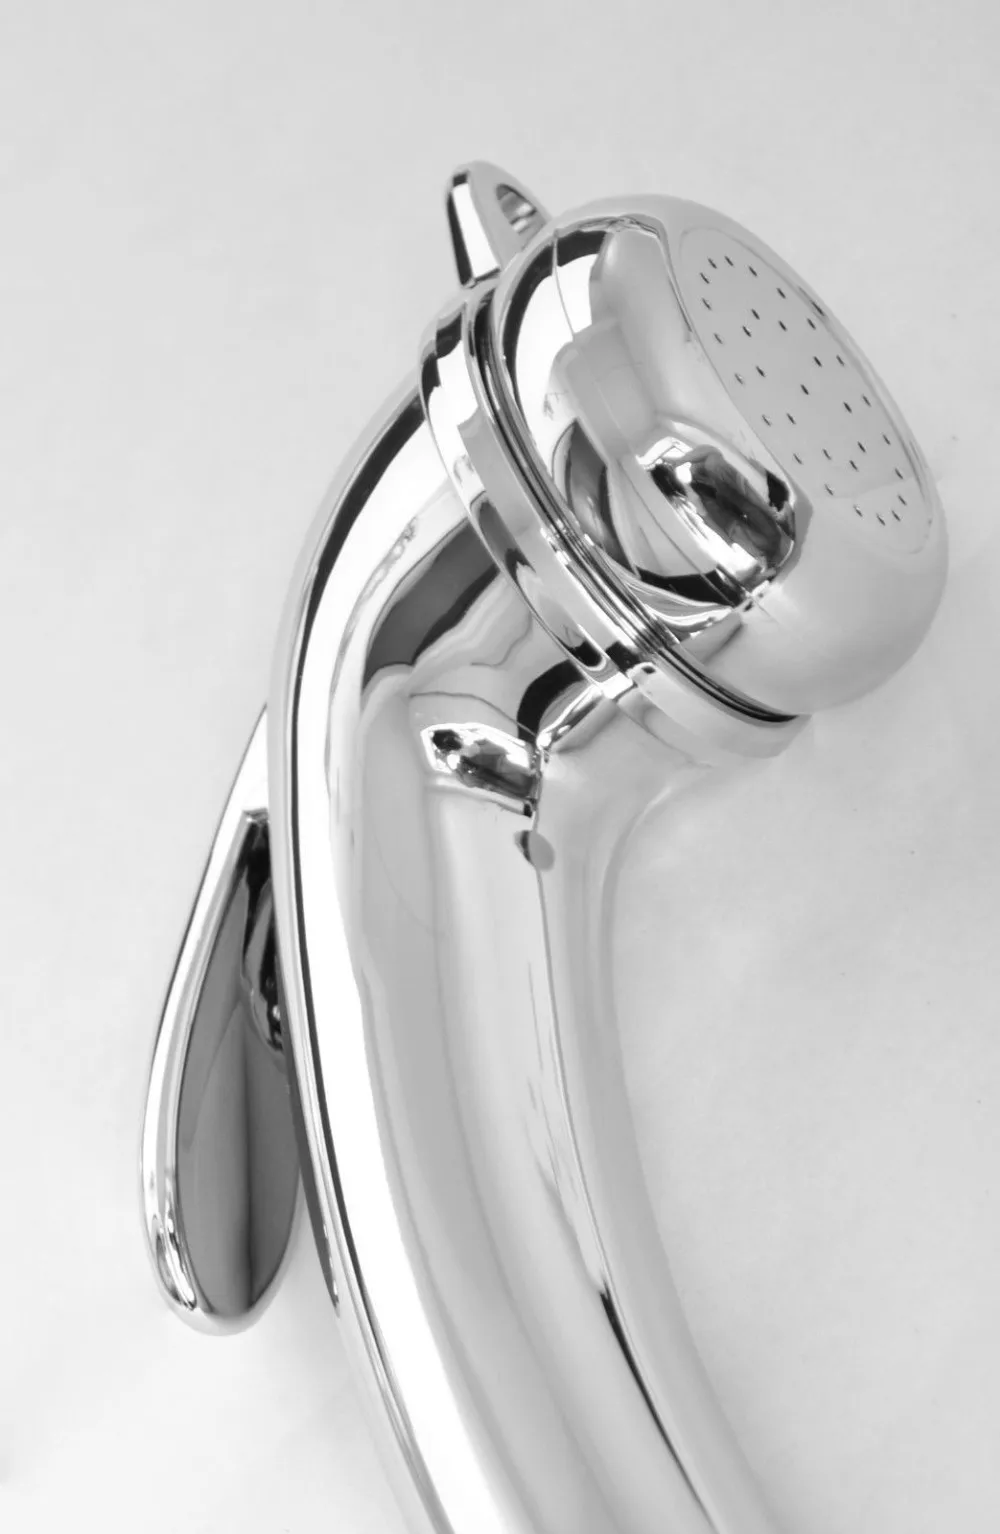 ABS Ванная комната Ручной Биде Туалет Shattaf Комплект опрыскиватель 1,5 м Нержавеющая сталь шланг